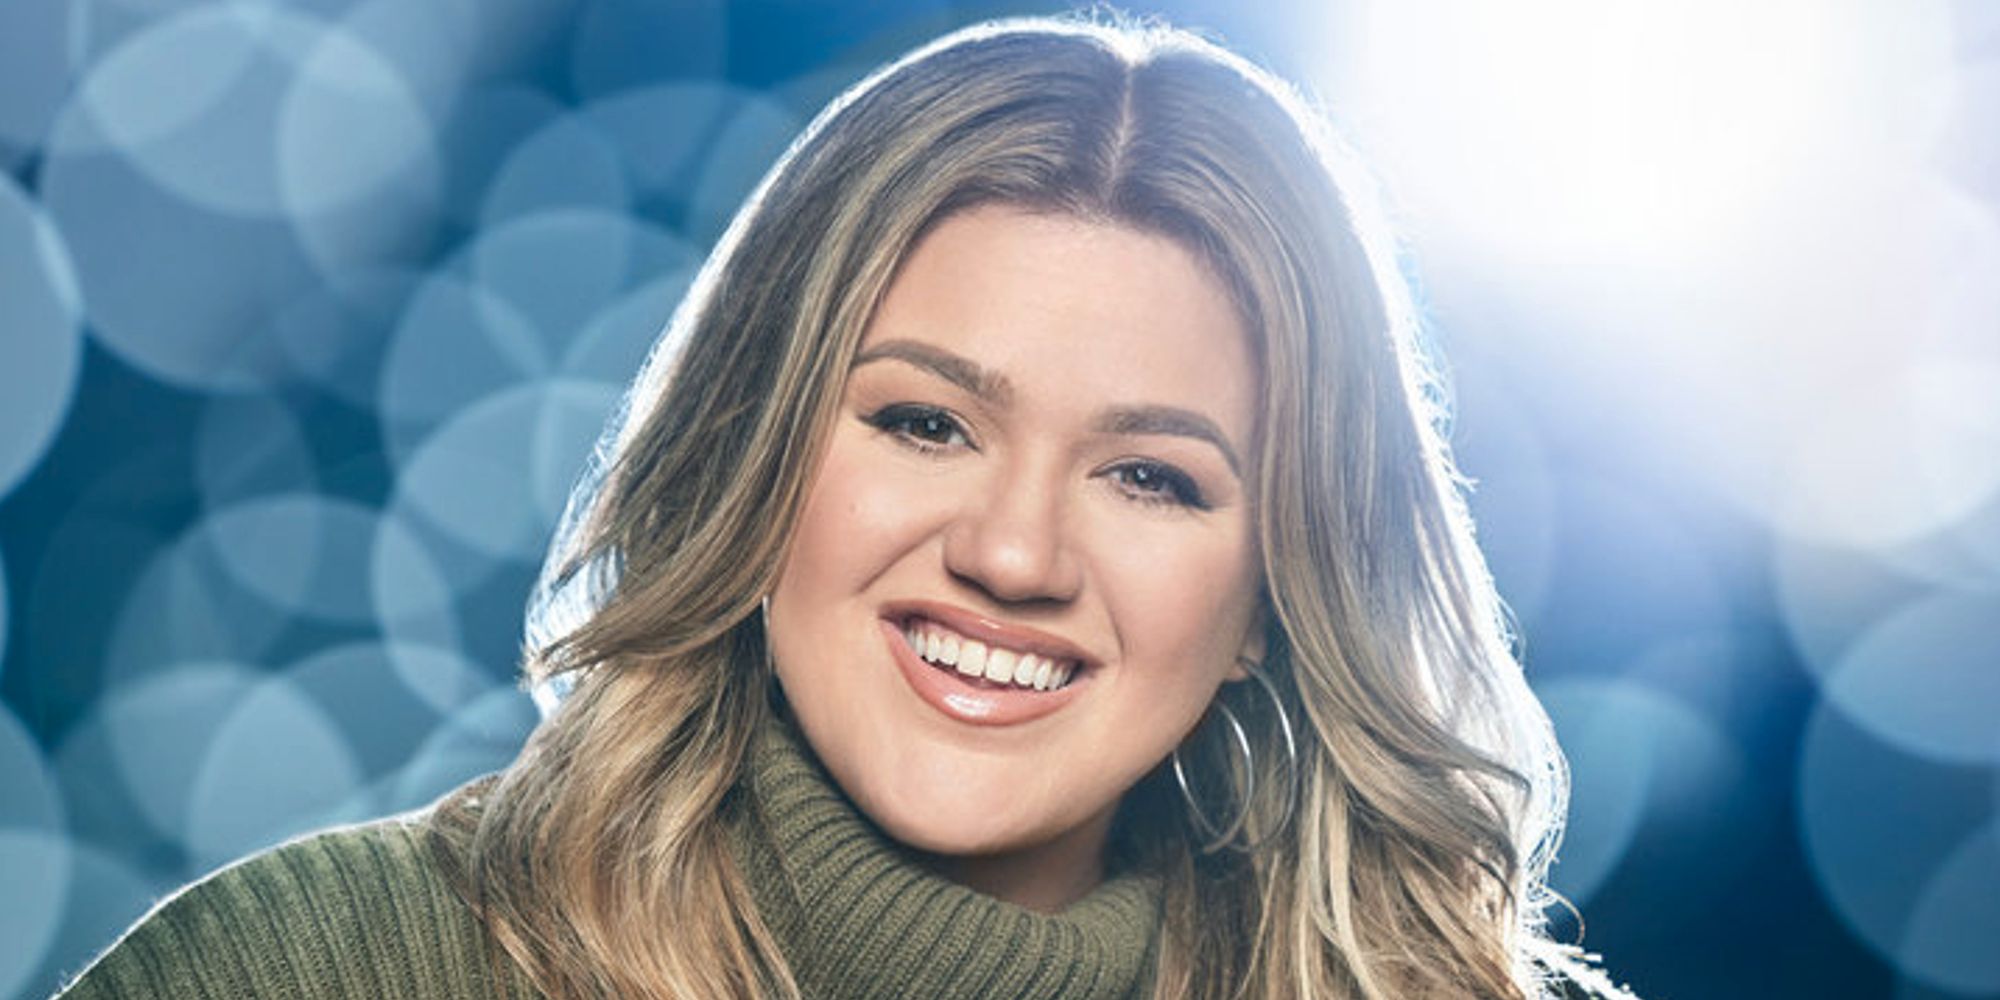 La voz: Kelly Clarkson afirma sorprendentemente que ‘no se volverá a casar’